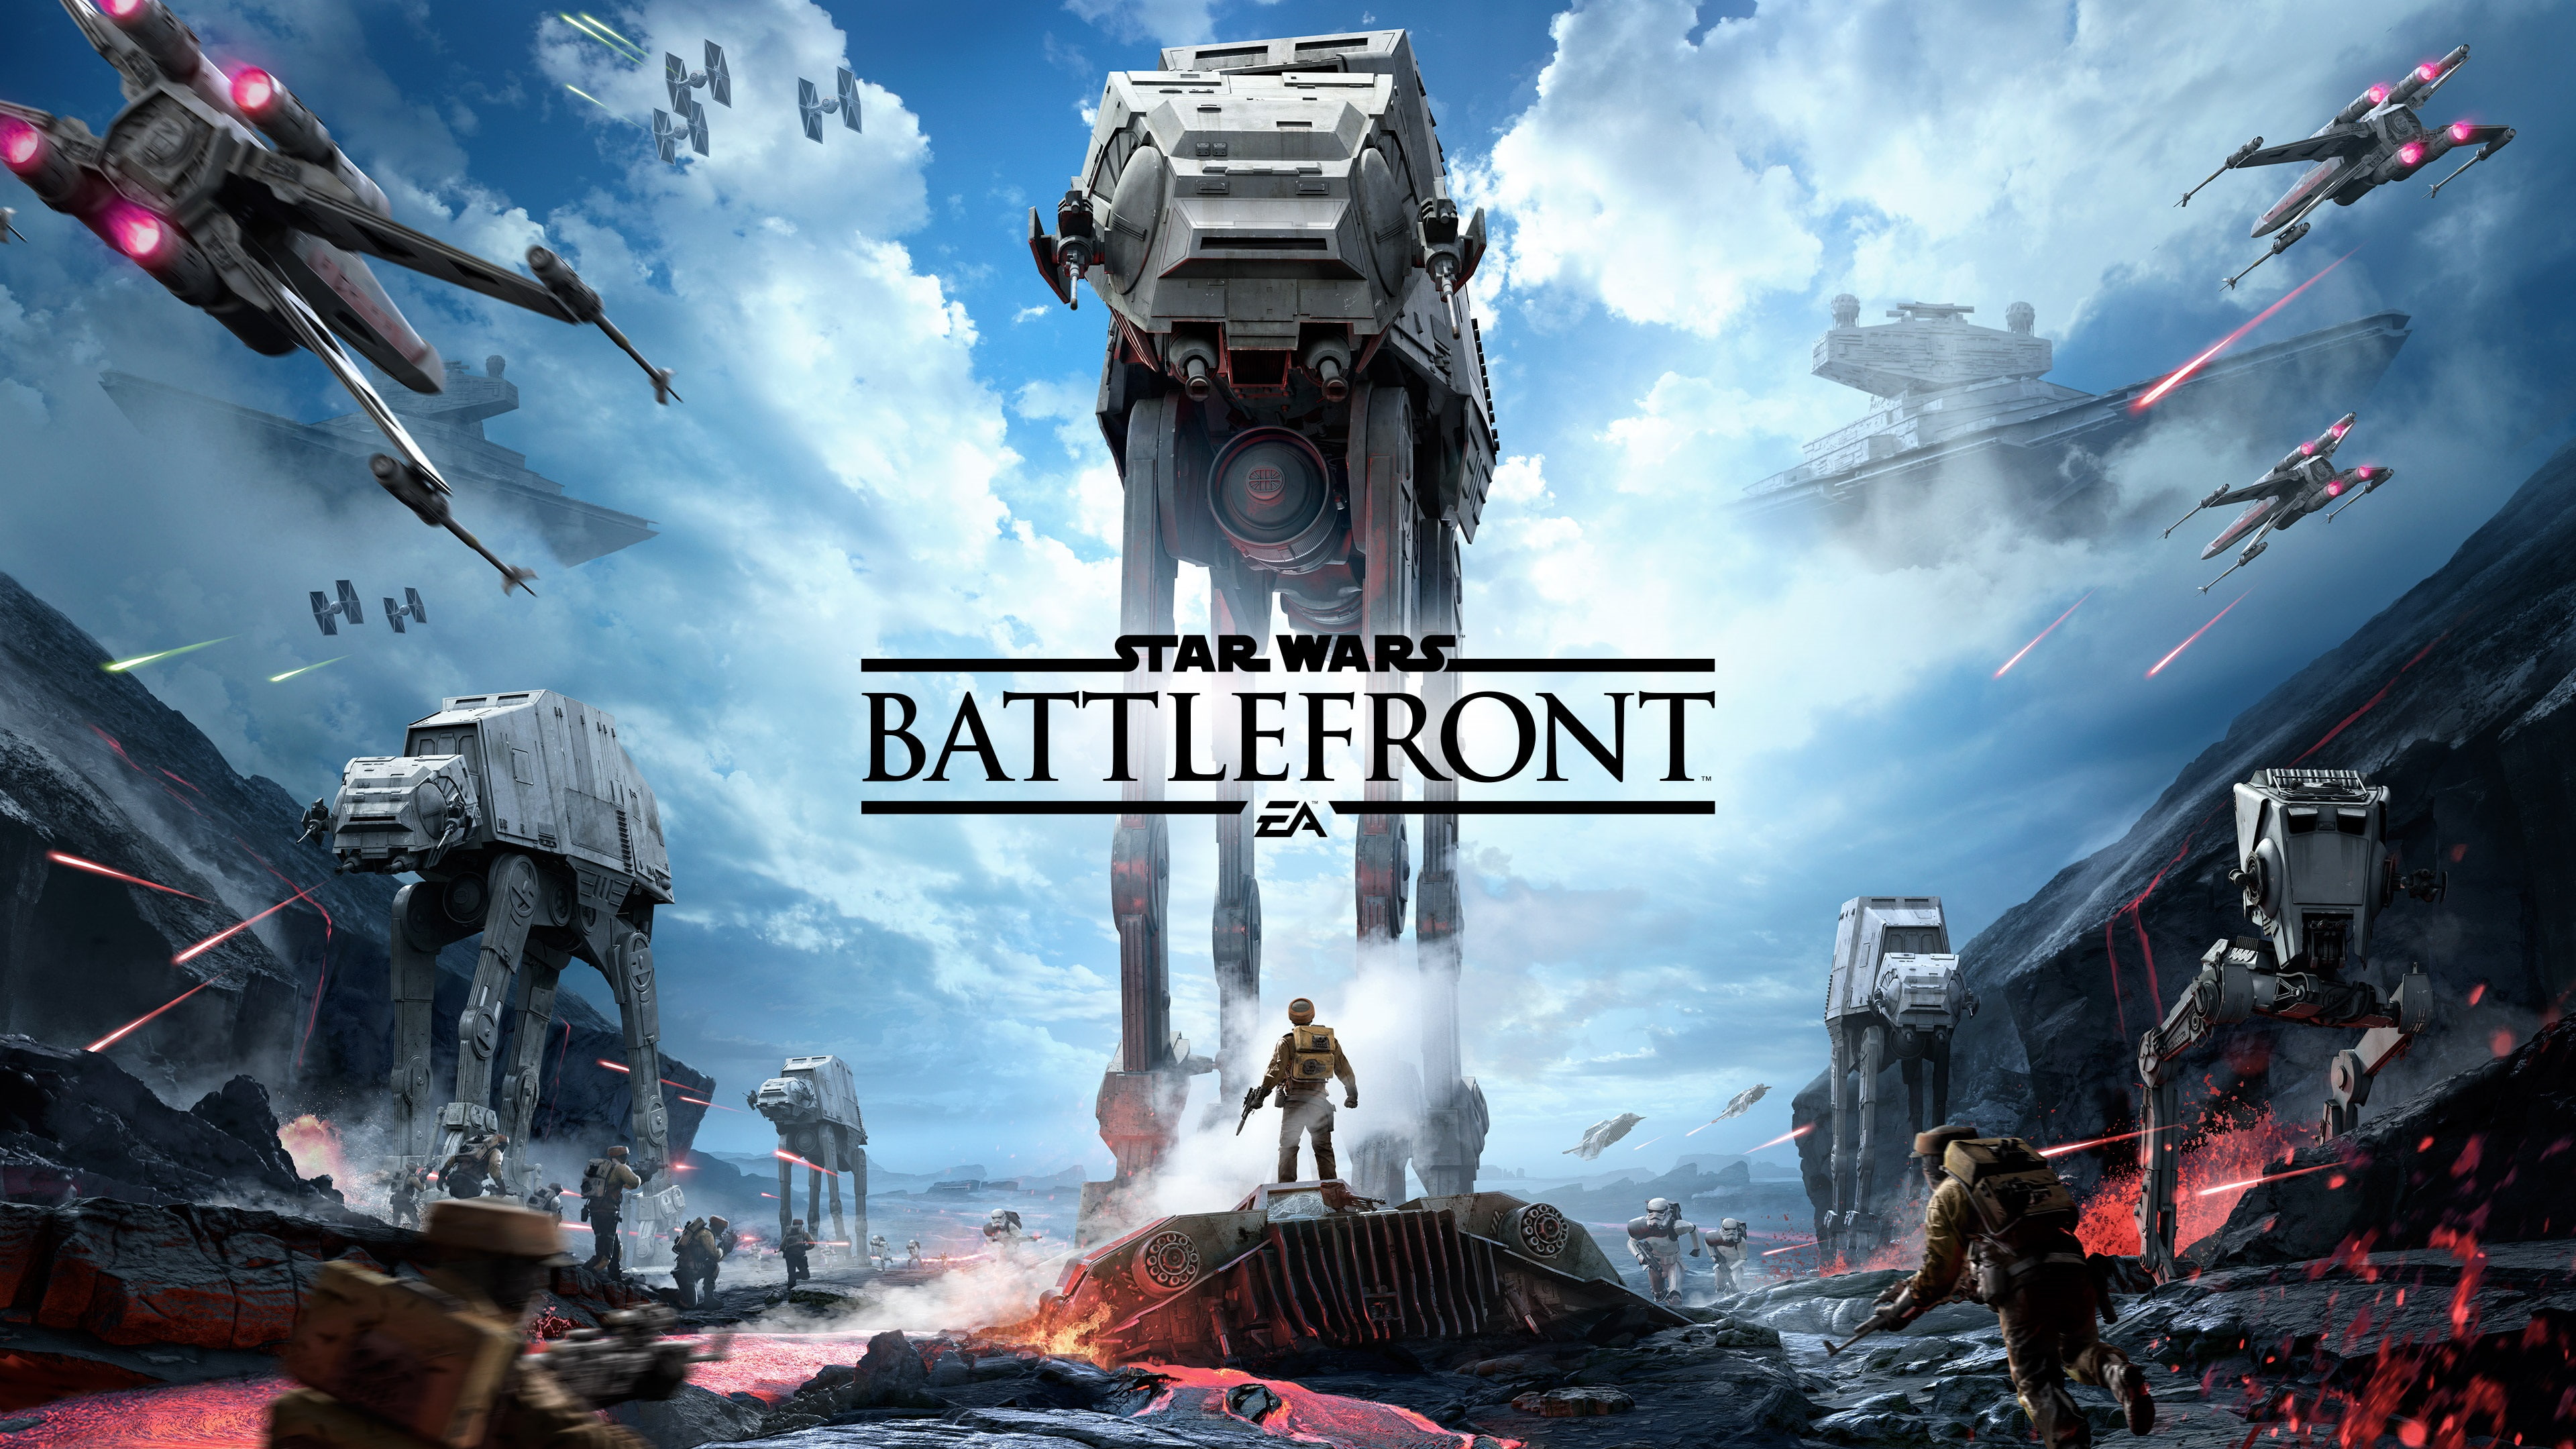 Star Wars Battlefront, EA games, star wars battlefront